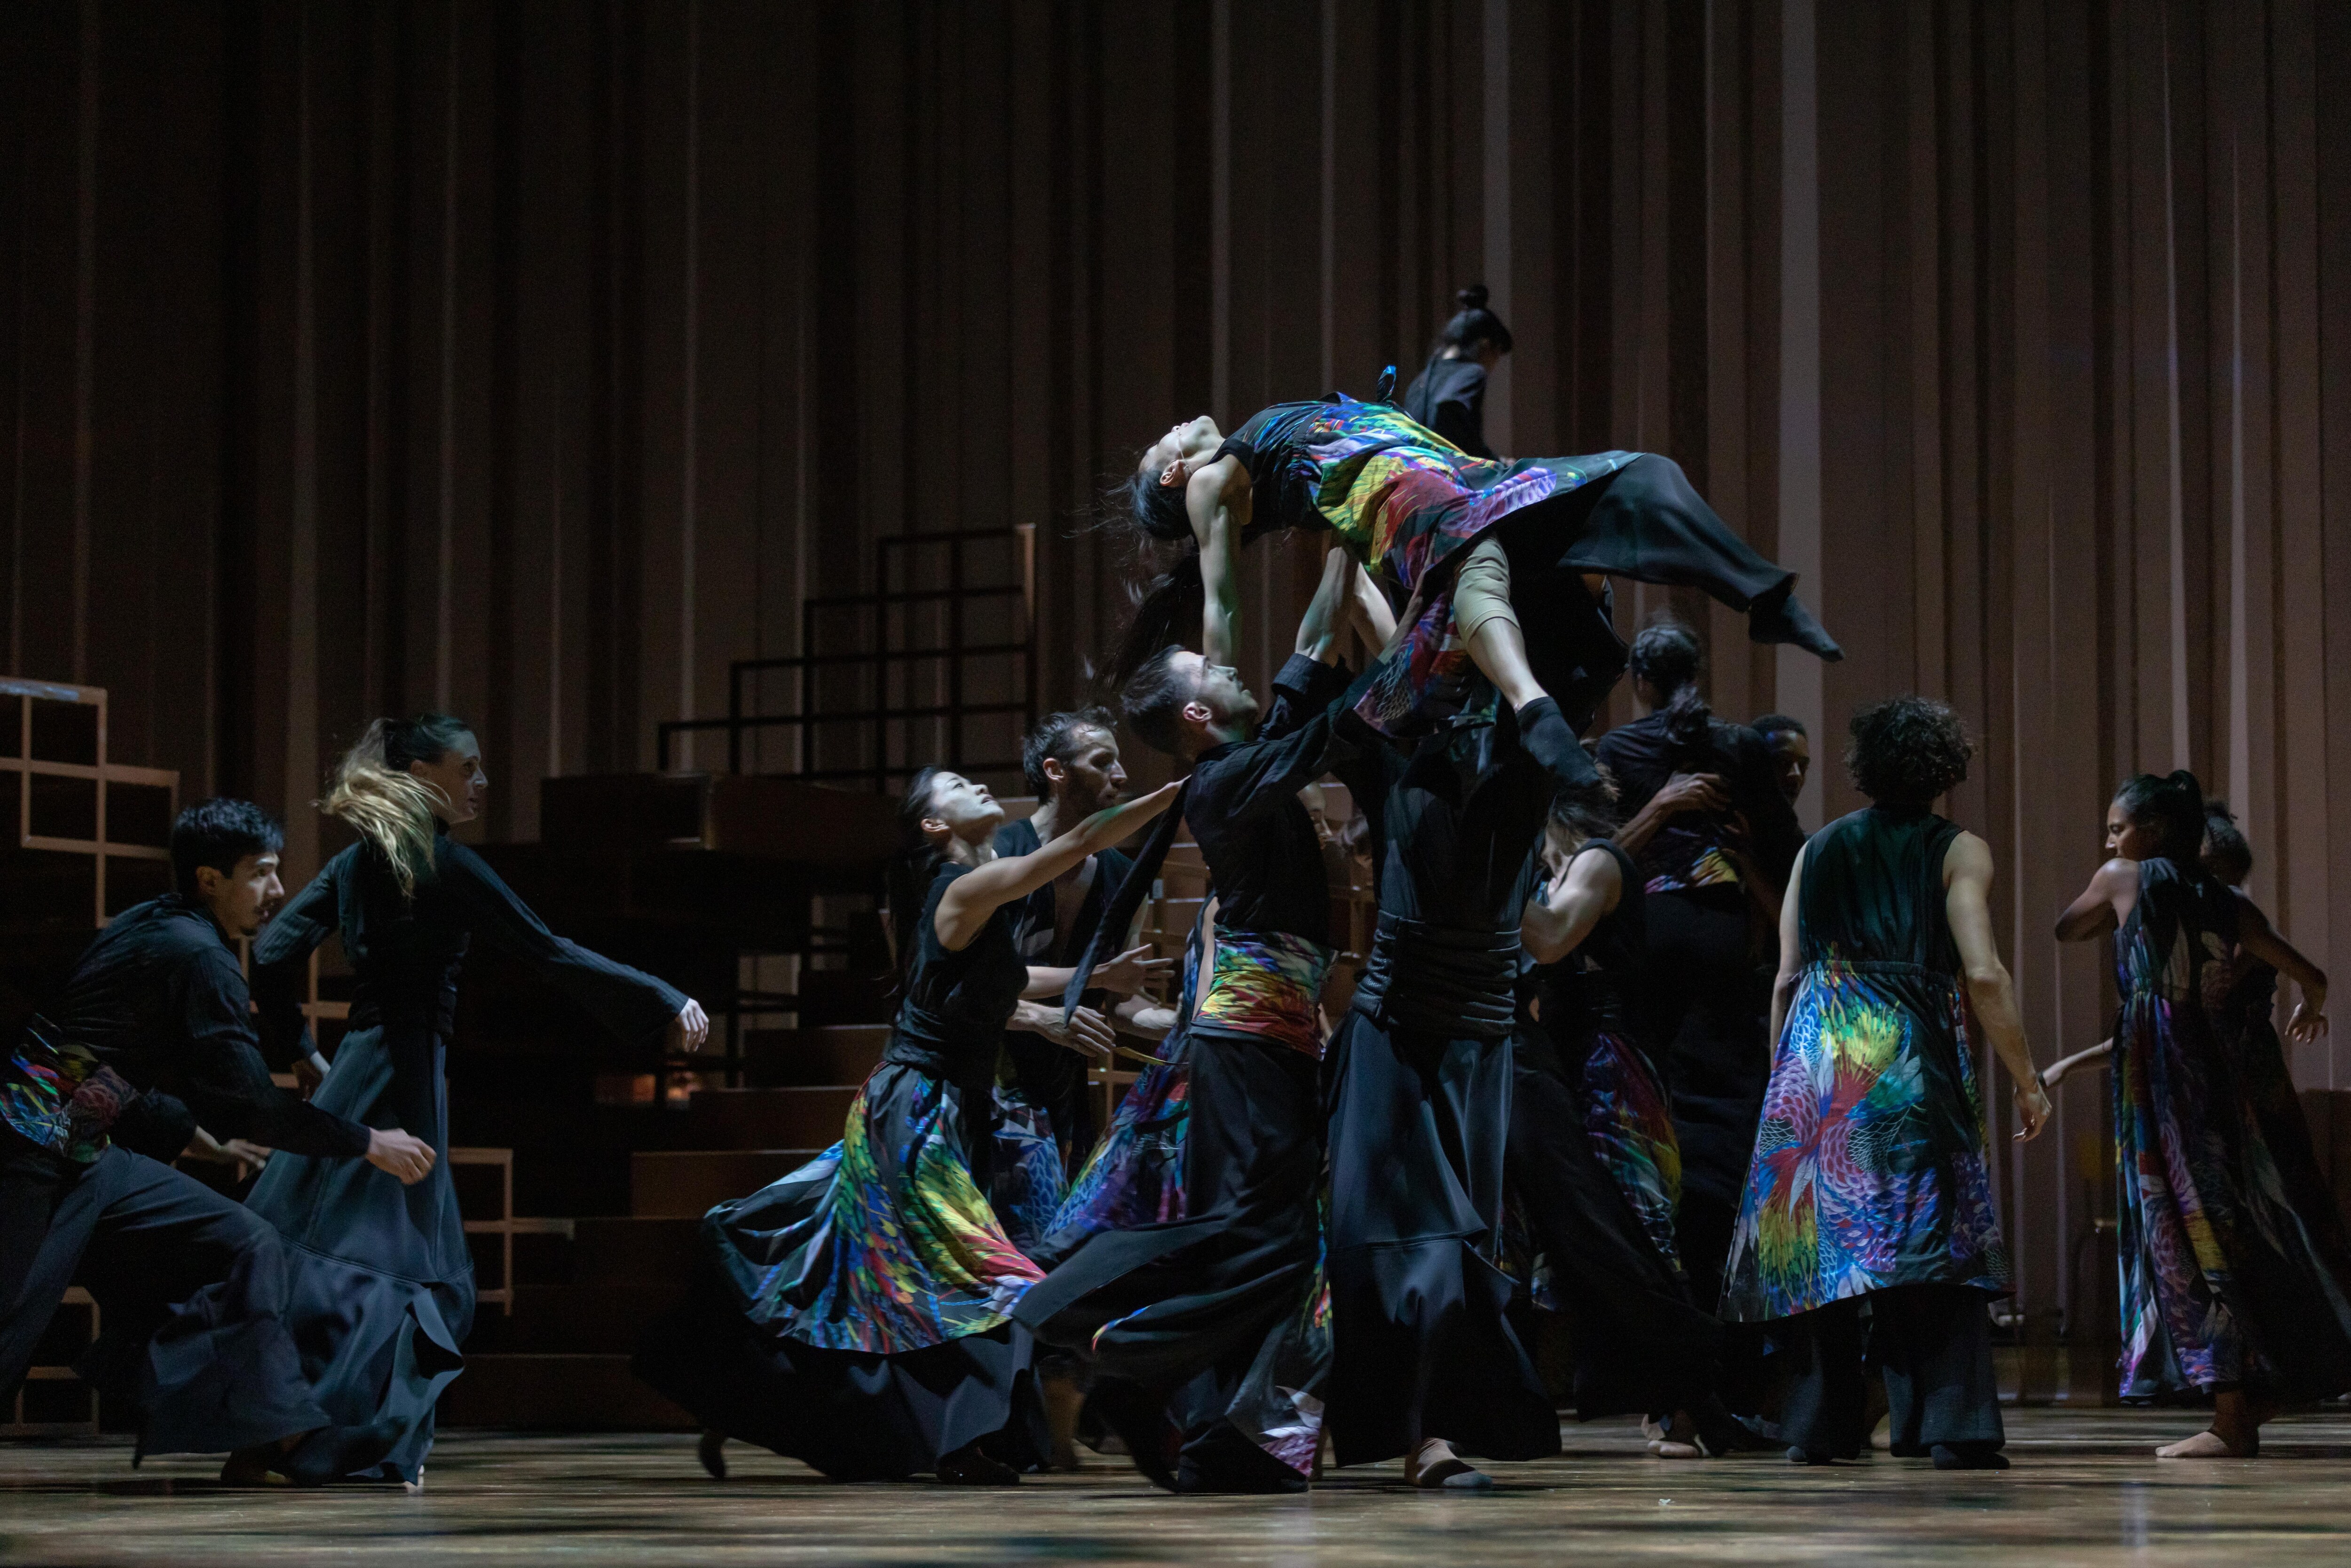 Danseurs de Ukiyo-e groupés, portant une danseuse 